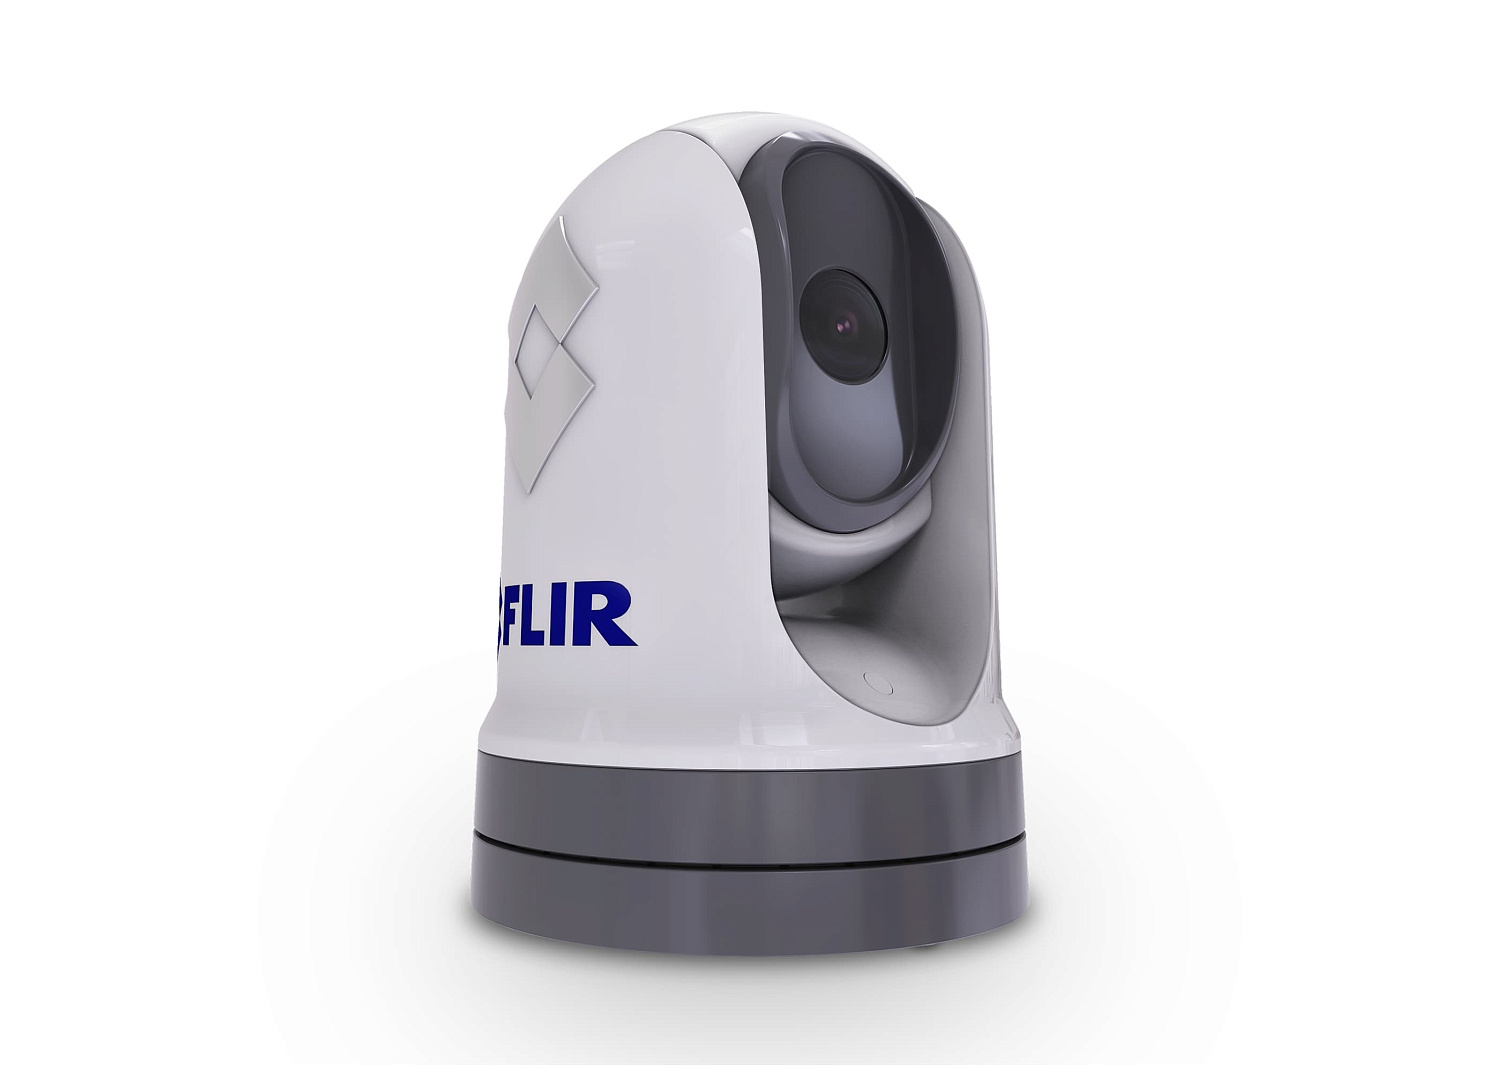 FLIR M232 IP Thermal Imaging Camera